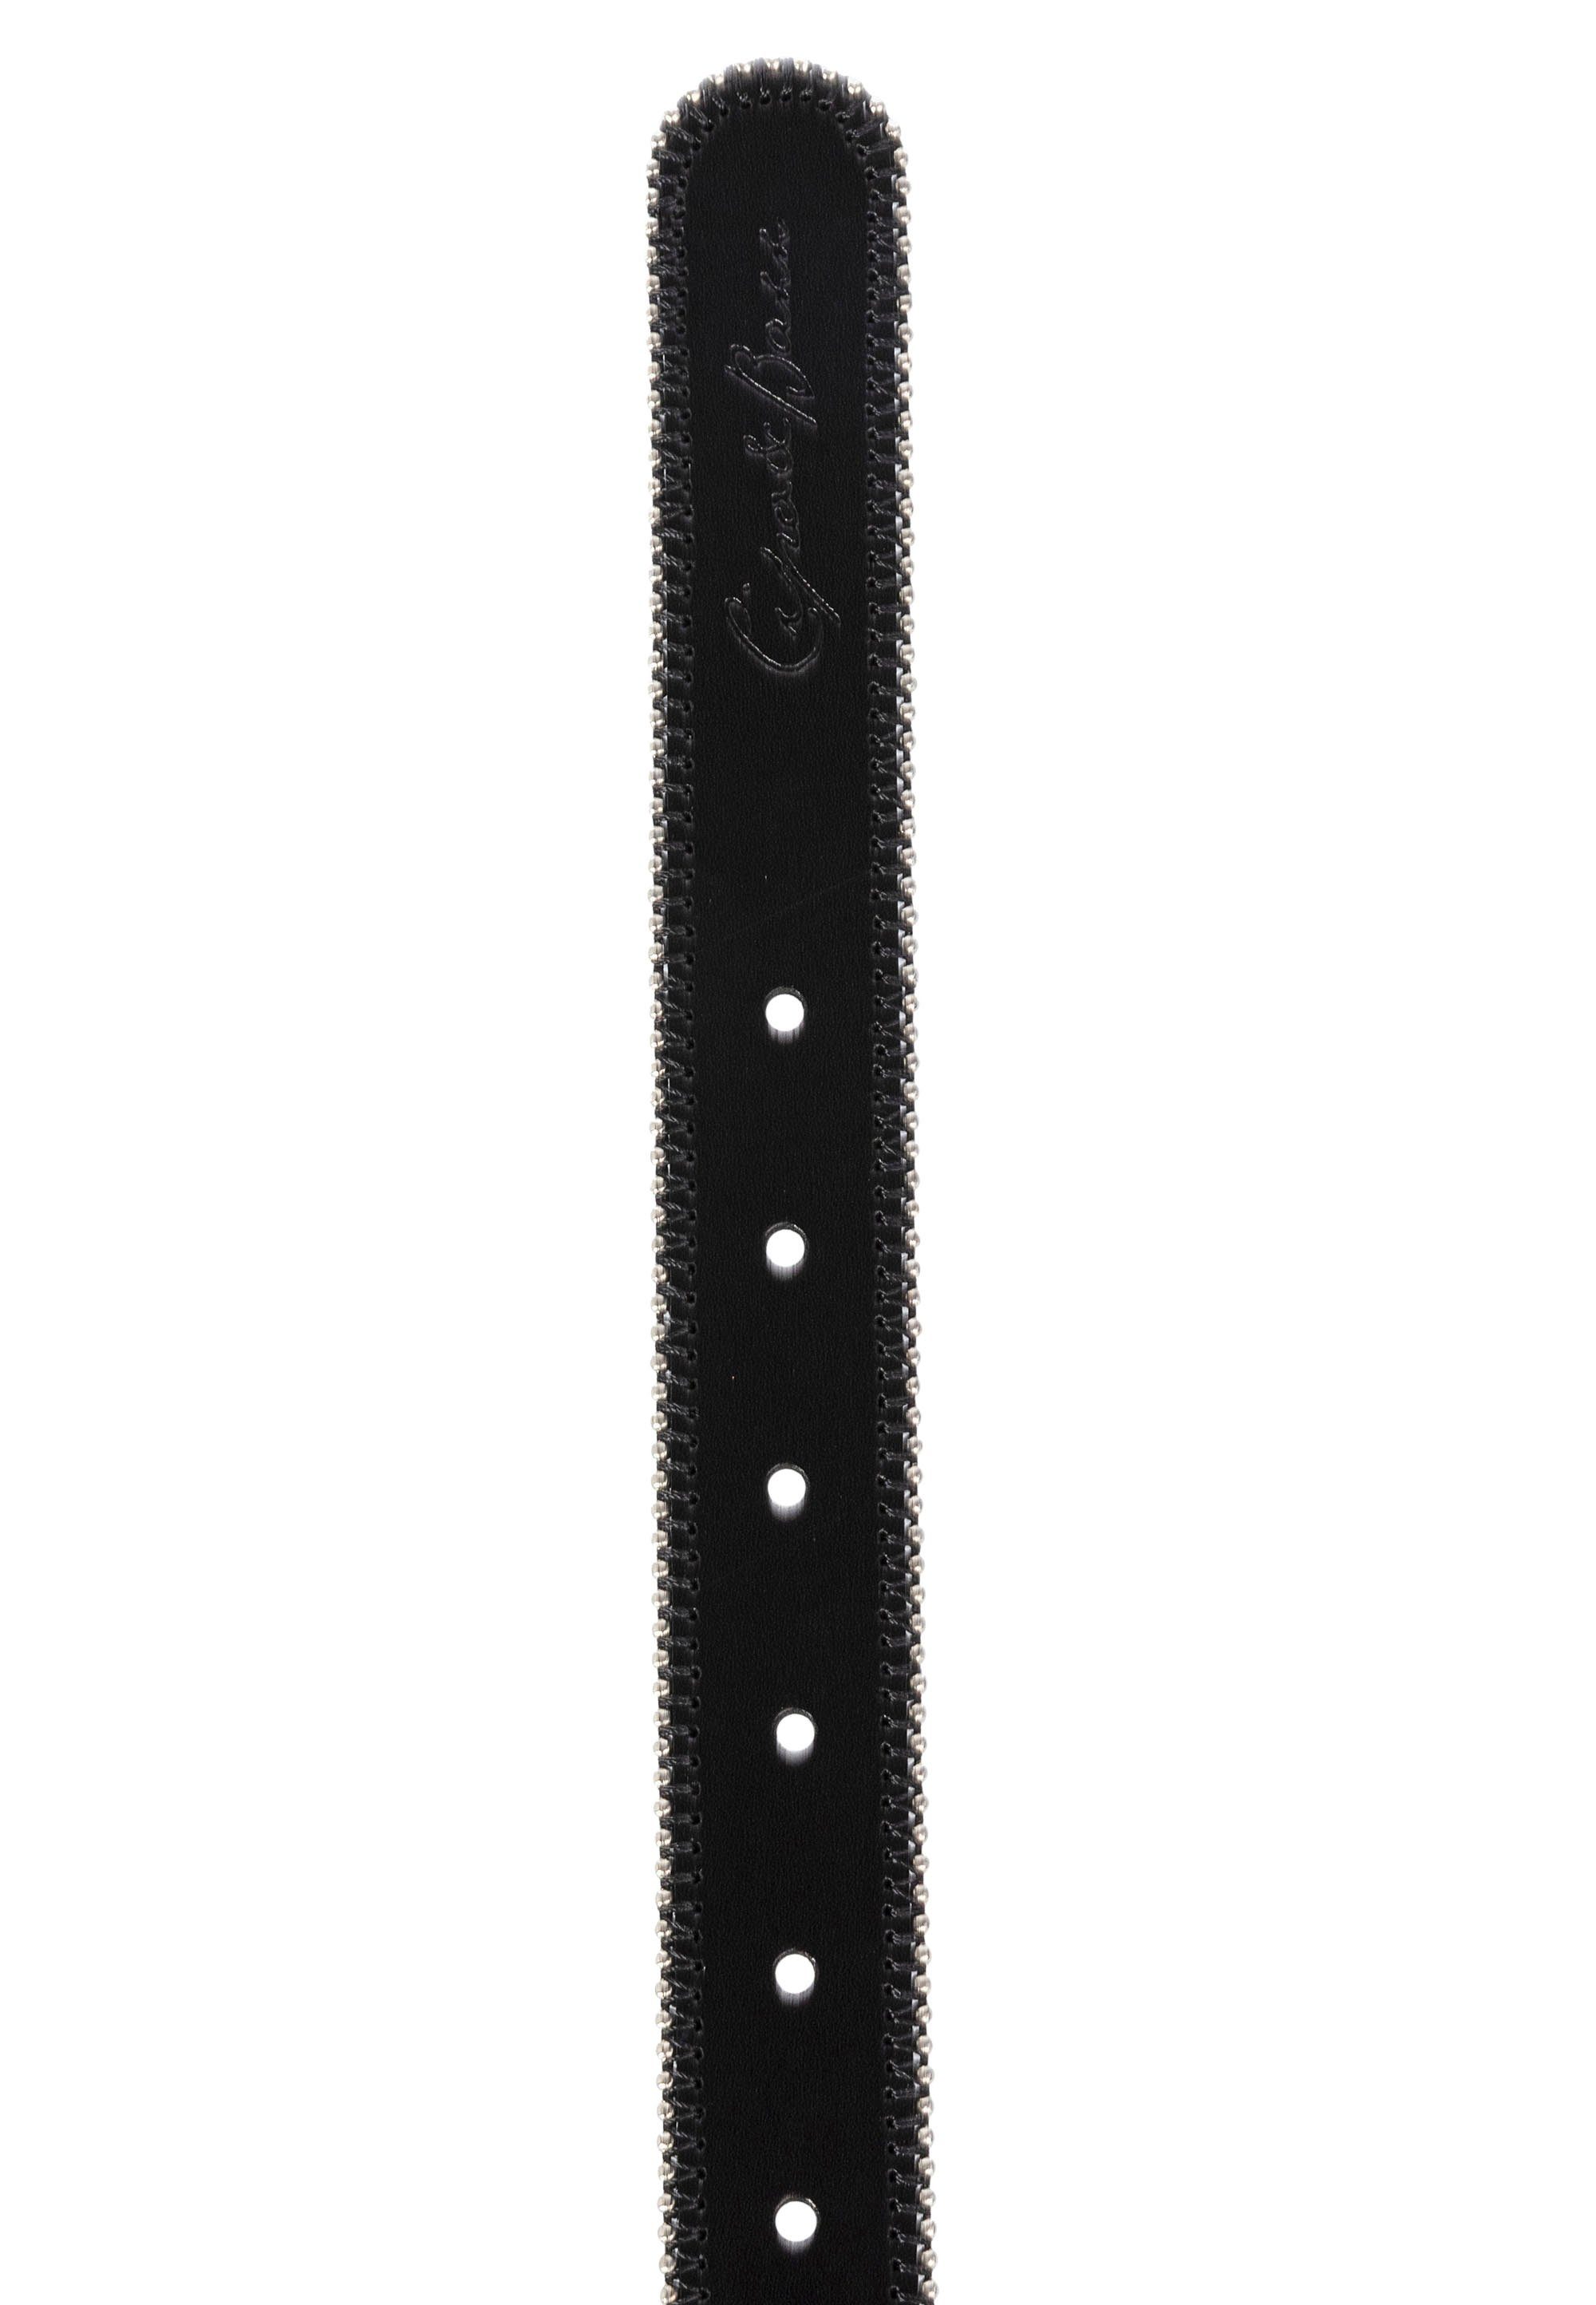 Cipo & Ledergürtel Baxx schwarz im Design ausgefallenen